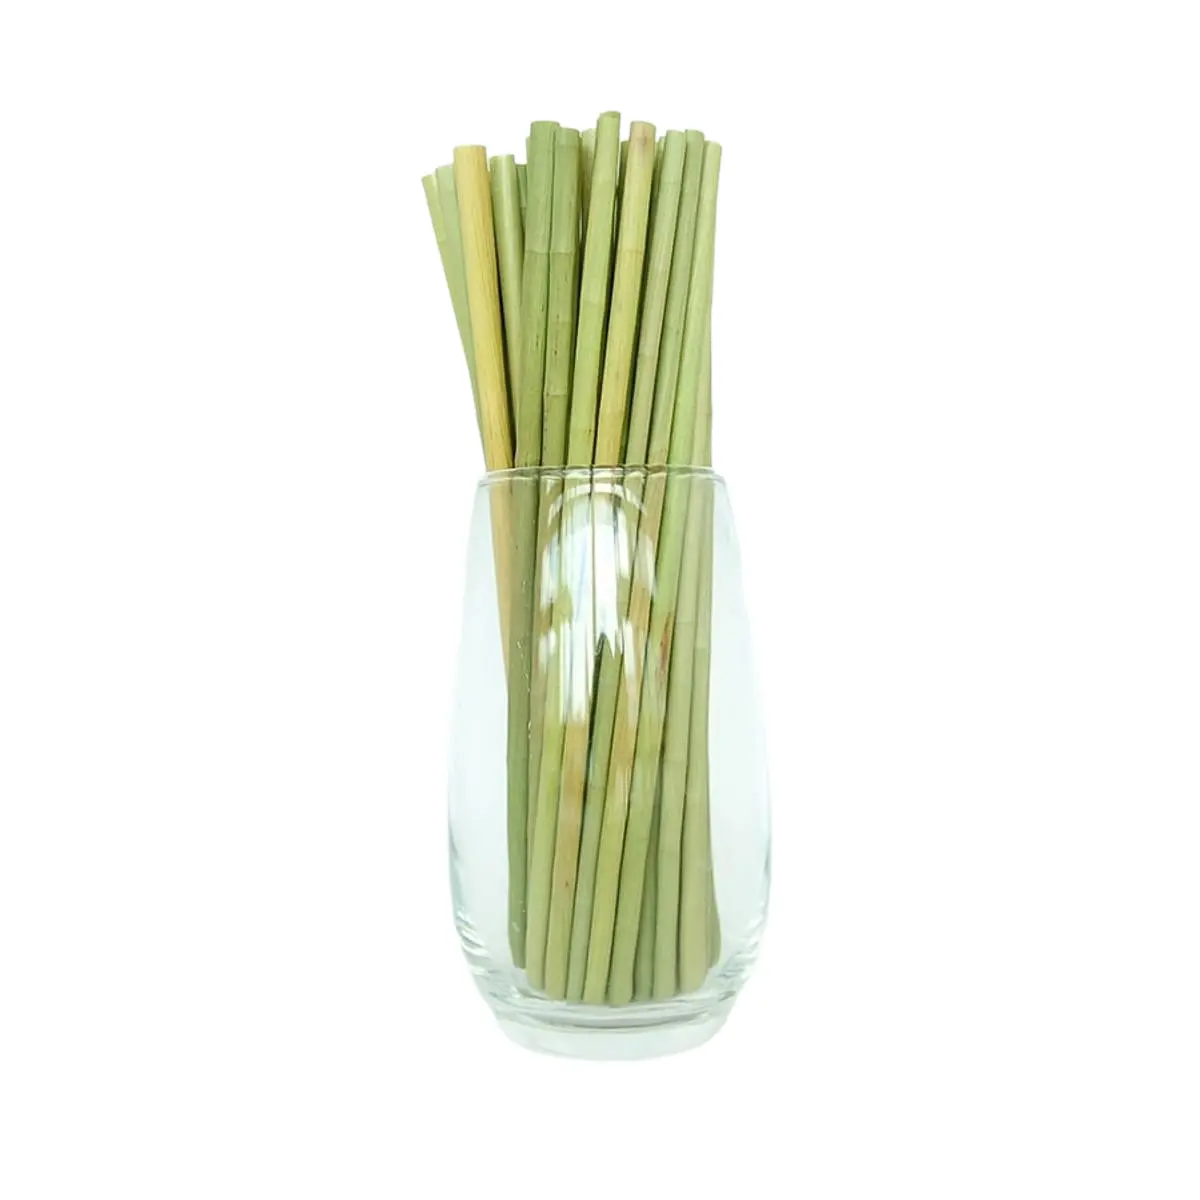 Купить натуральные многоразовые бамбуковые соломинки, сделанные во Вьетнаме, натуральные, экологически чистые